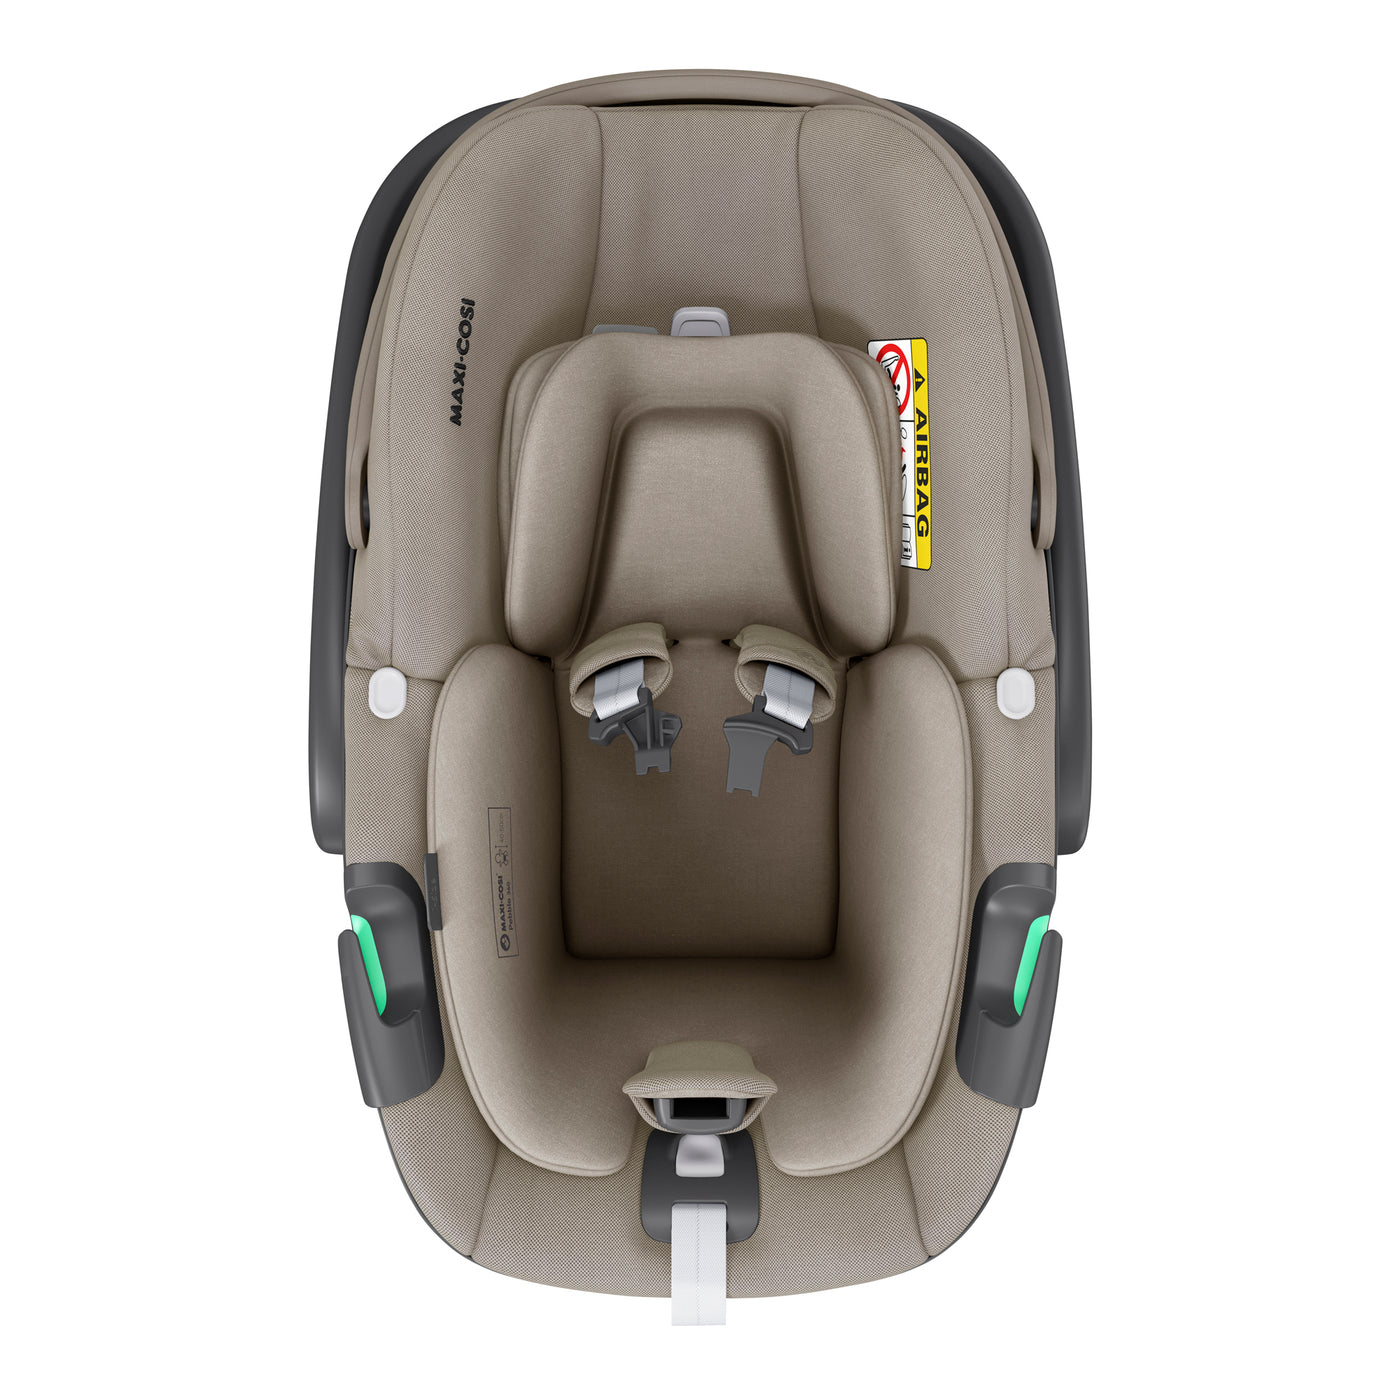 Maxi-Cosi Pebble 360 Car Seat - Luxe Twillic Truffle